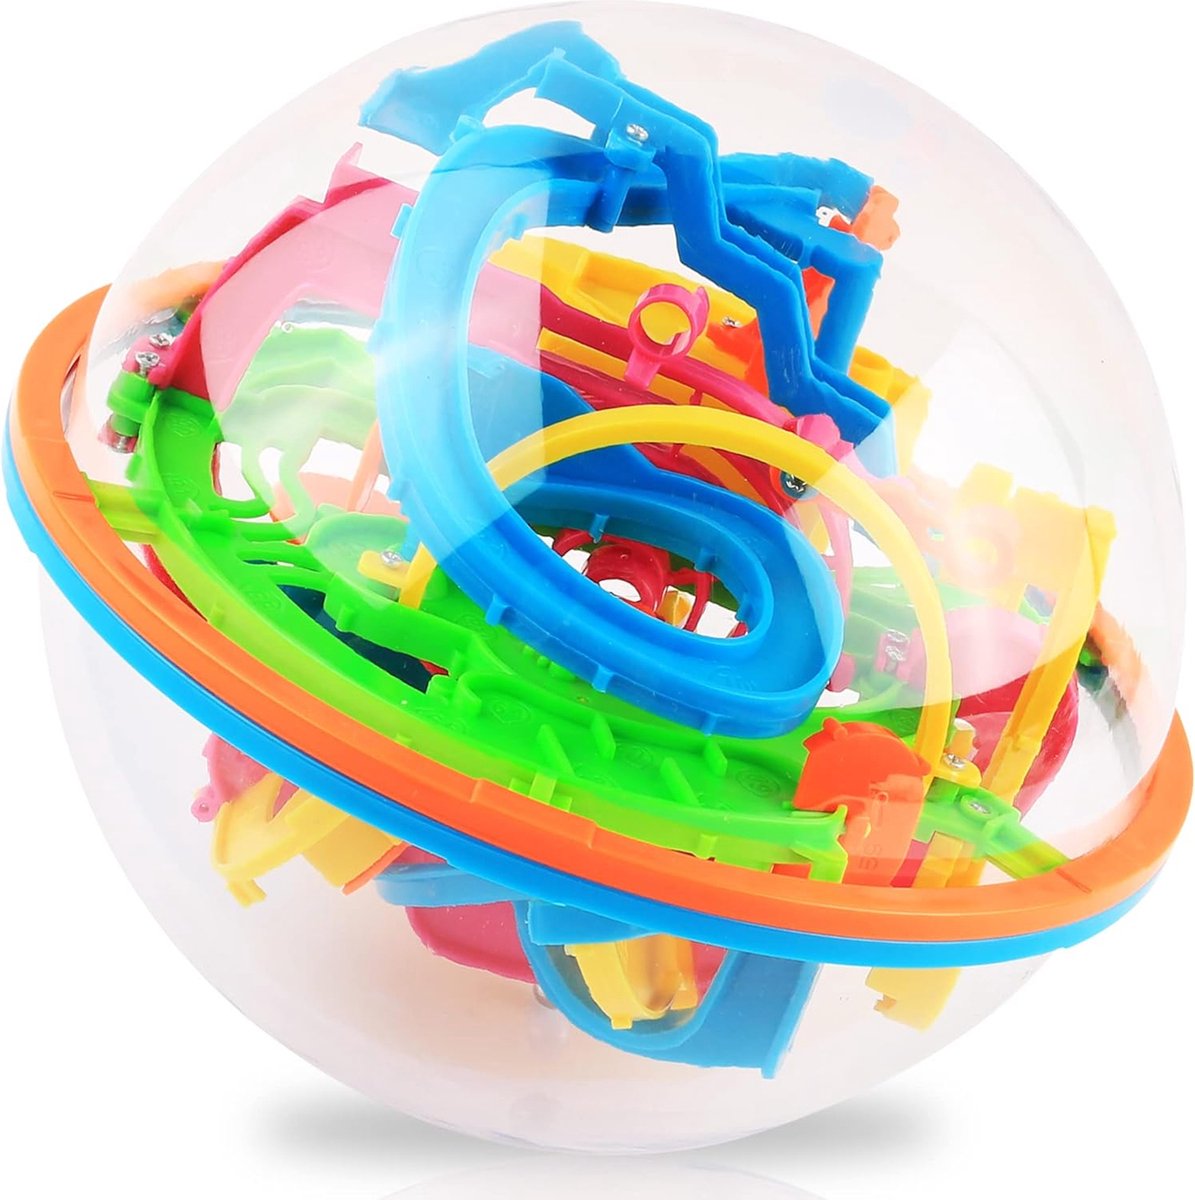 Maze Ball Perplexus Puzzelbal 3D Doolhofspel Breinbreker Puzzels 100 Obstakels Ø12 5cm